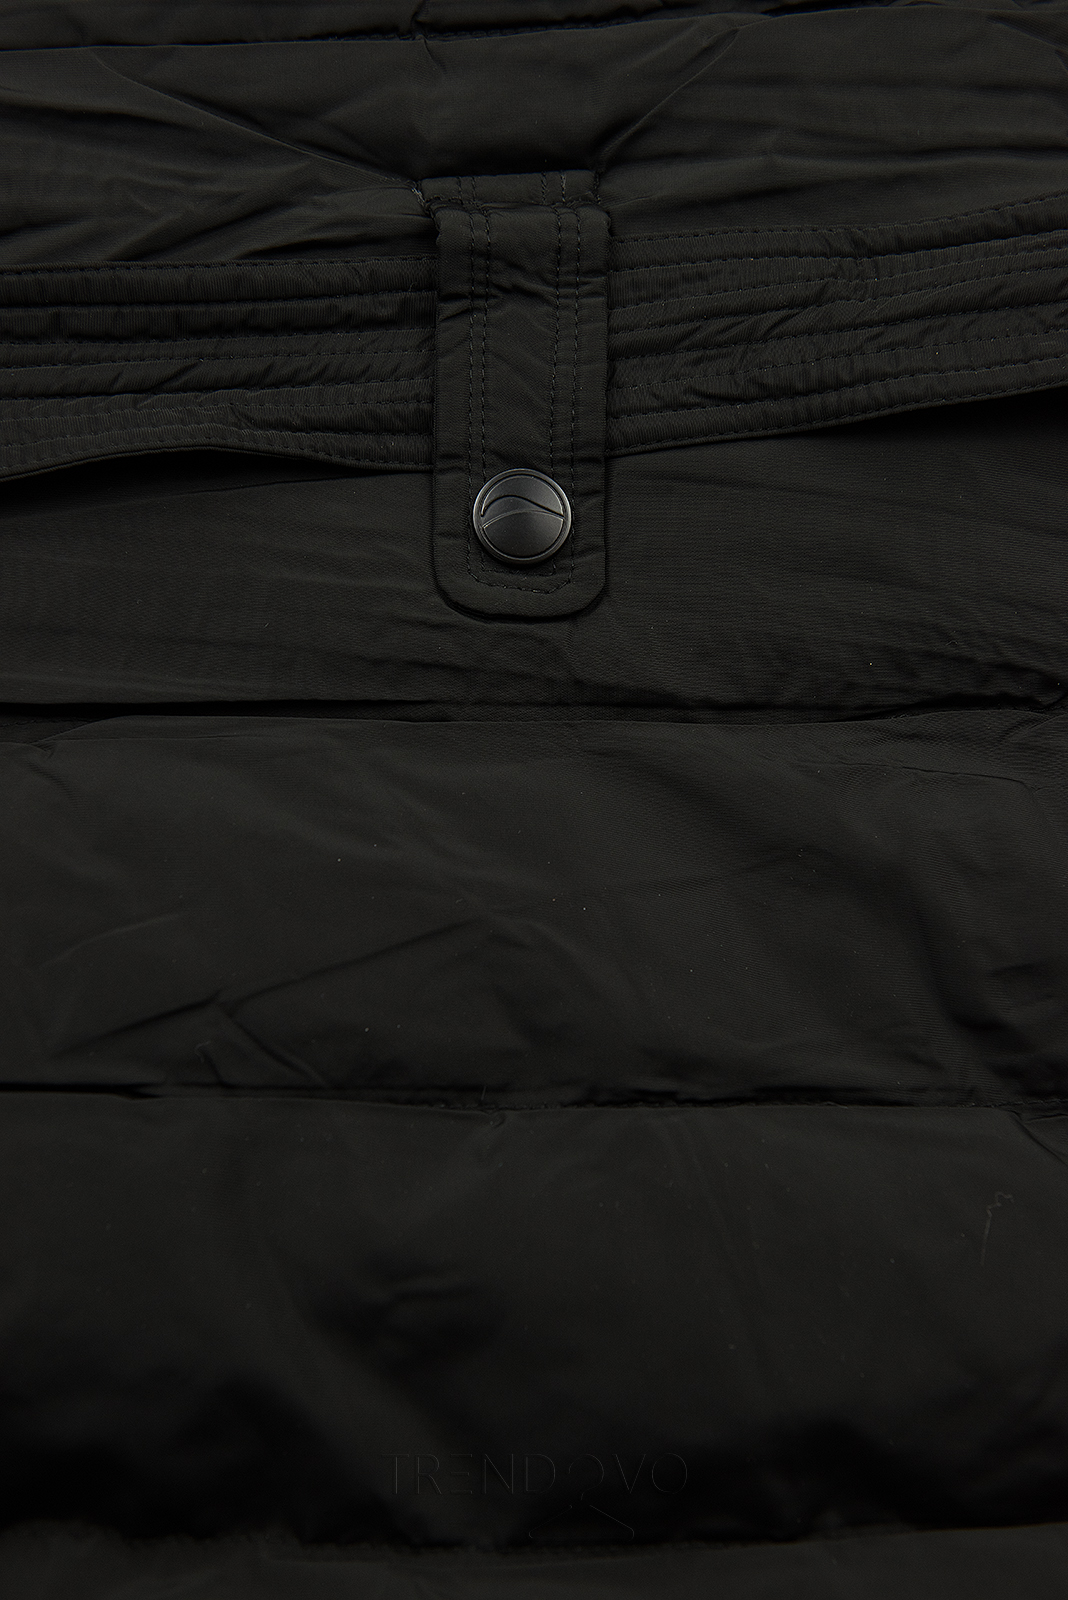 Černá zimní bunda s plyšovým límcem